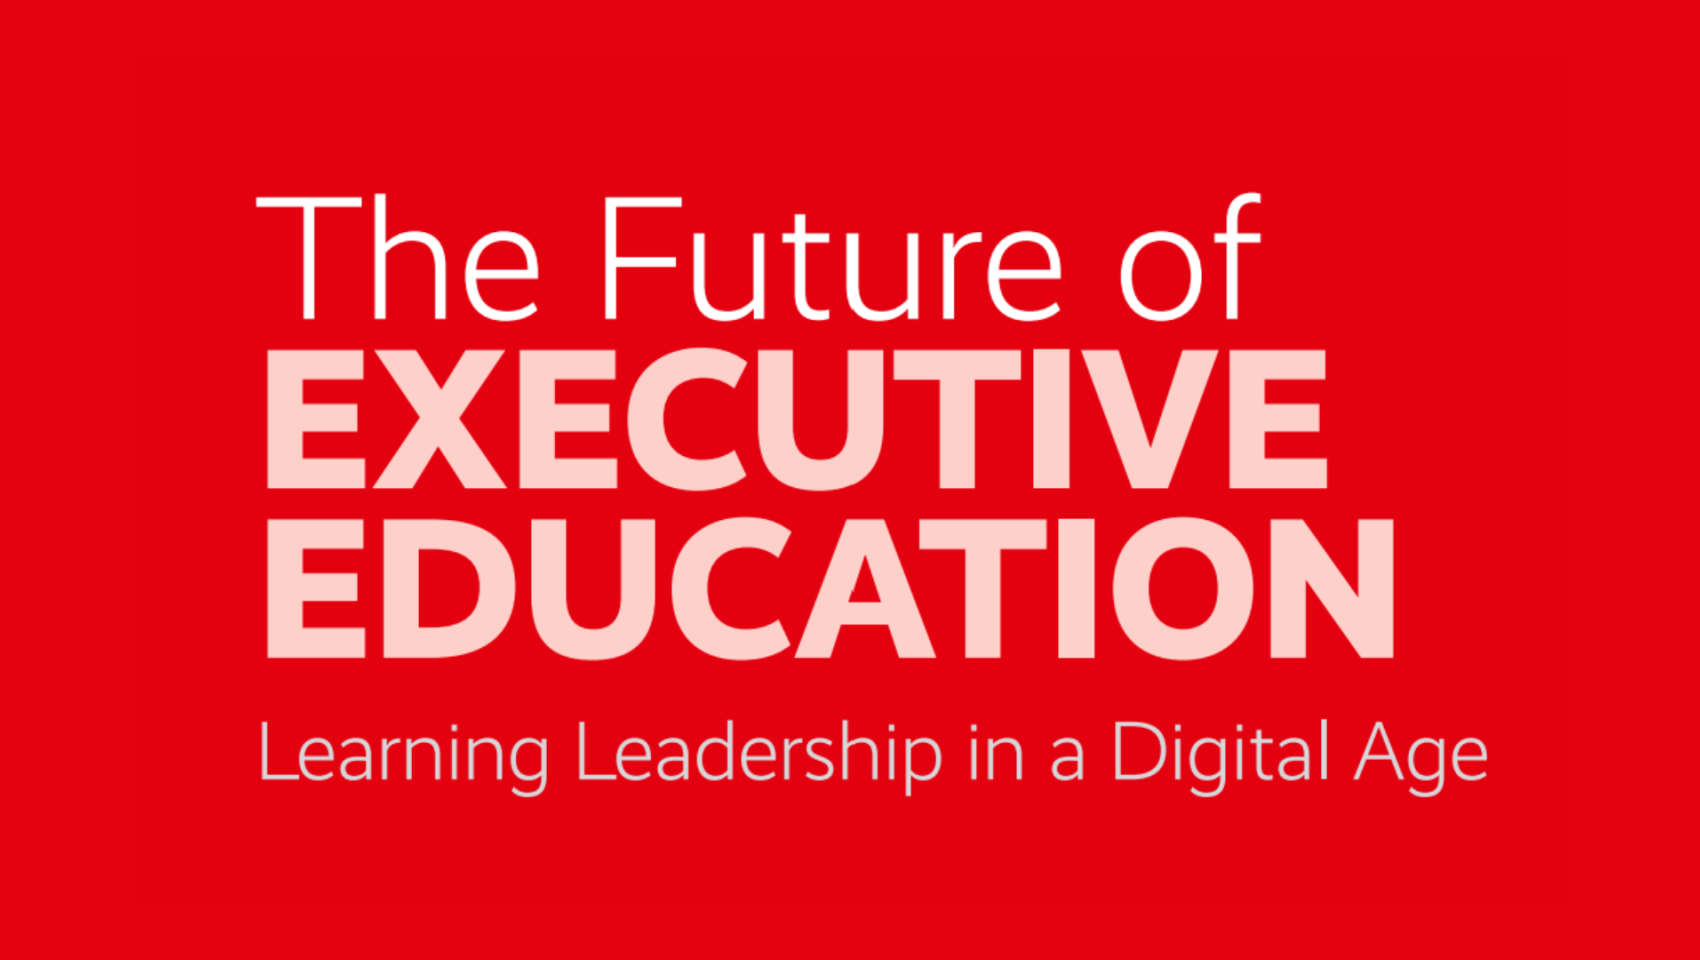 The Future of Executive Education